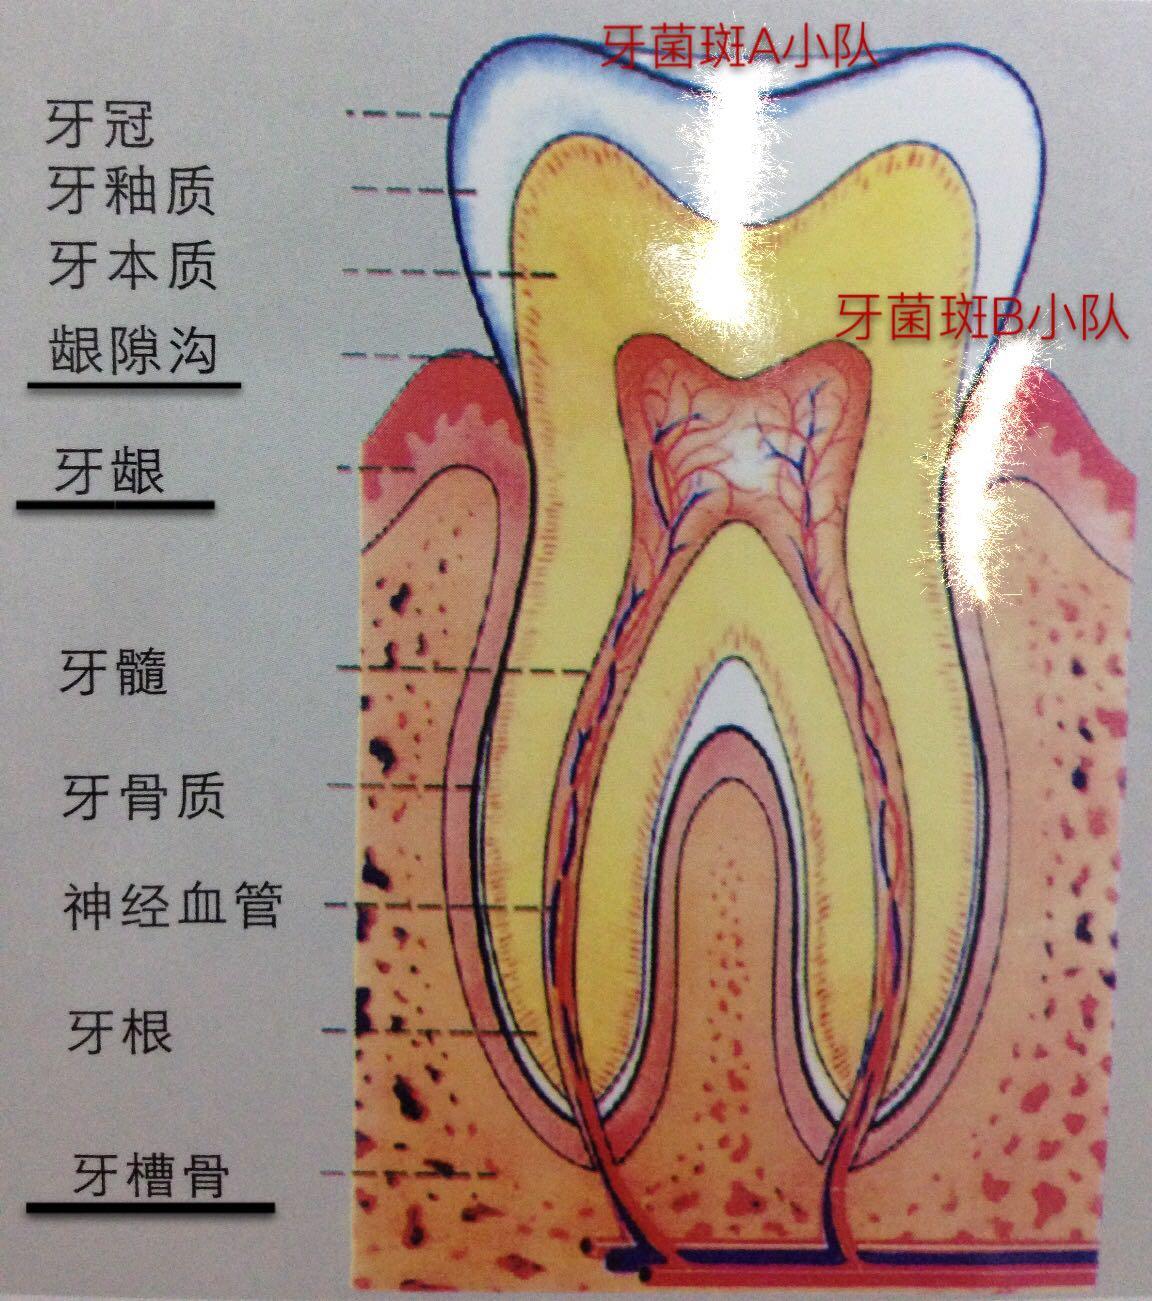 牙髓腔解剖：前牙、磨牙、乳牙髓腔 - 口腔医学 - 天山医学院